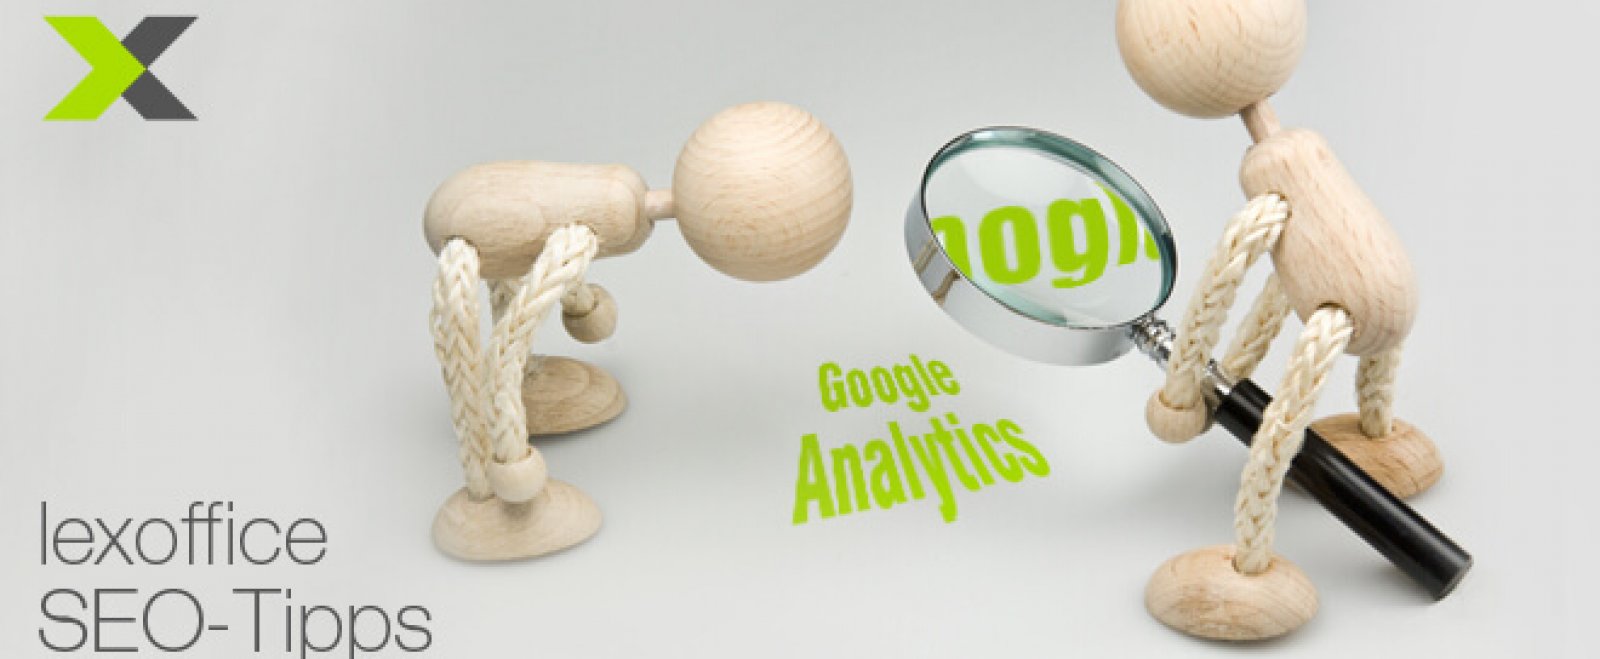 SEO-Tipps: Google Analytics